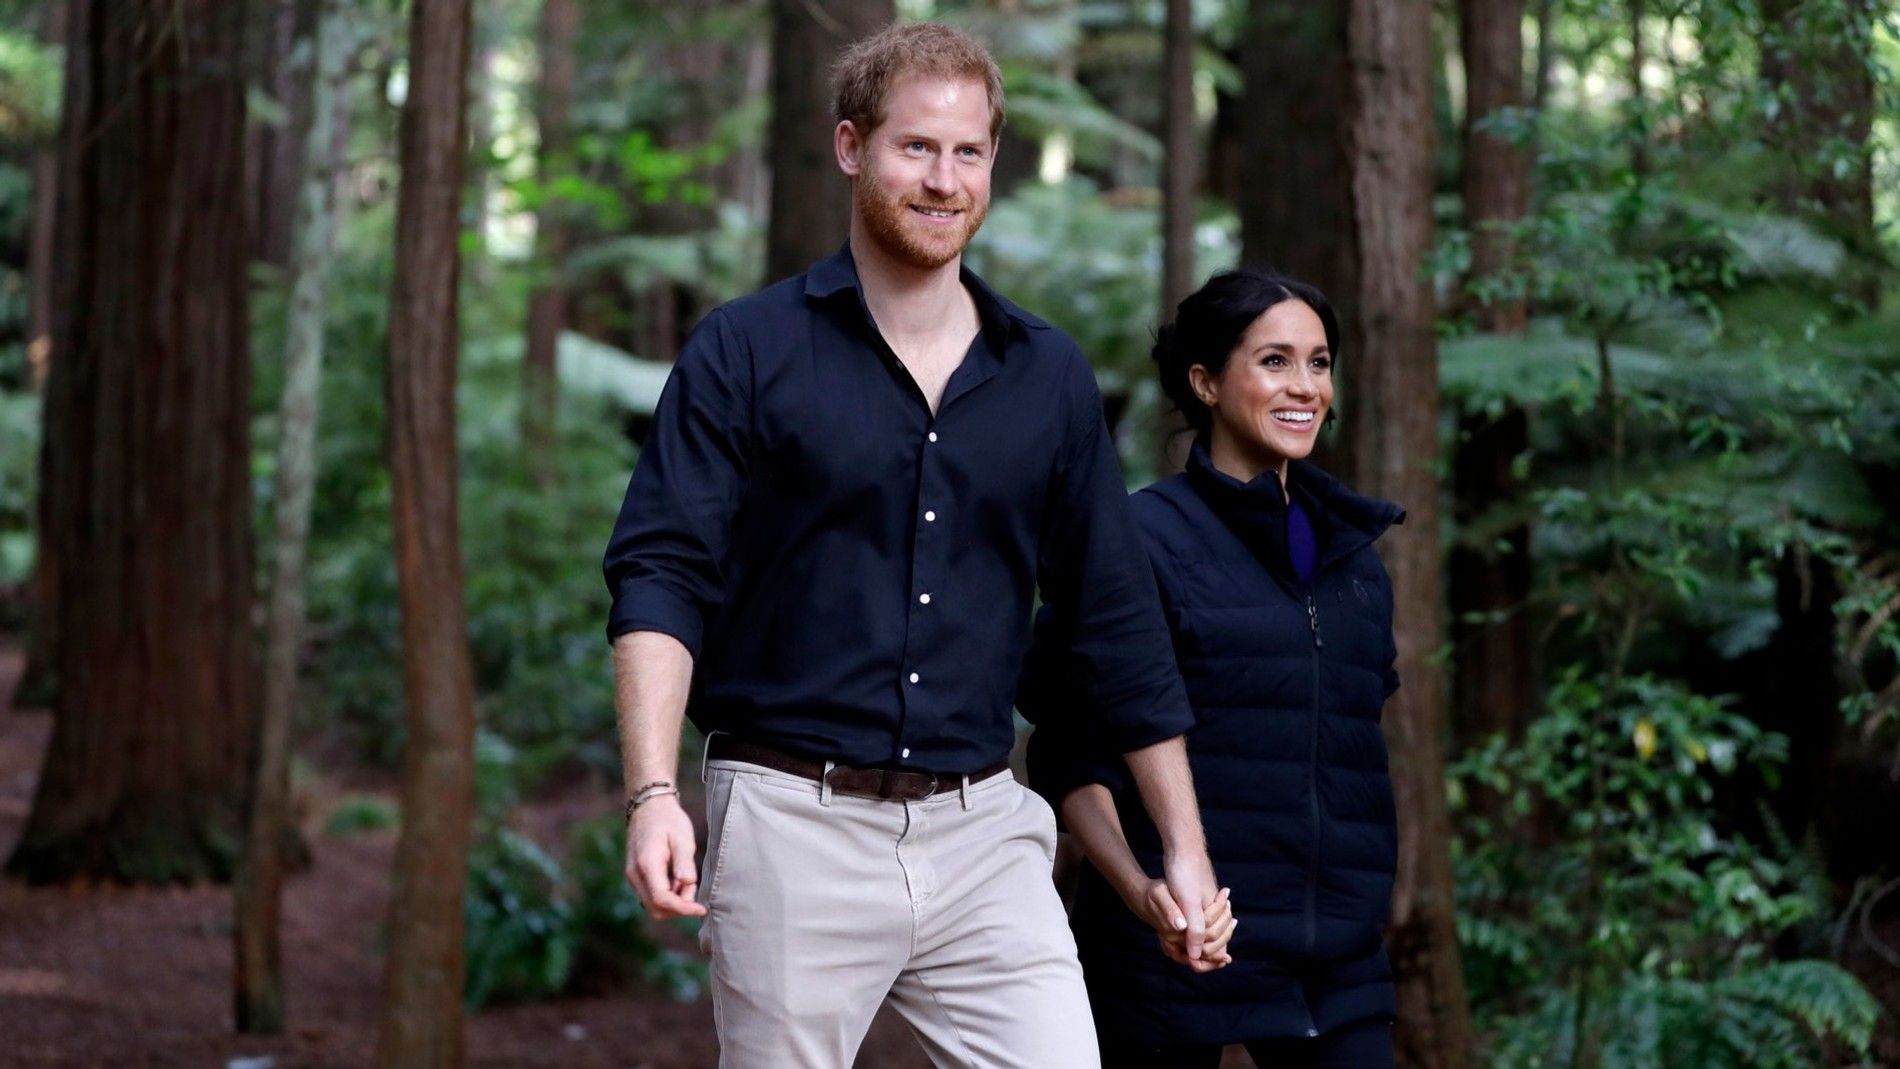 Принц Гарри и Меган Маркл
Фото: Getty Images